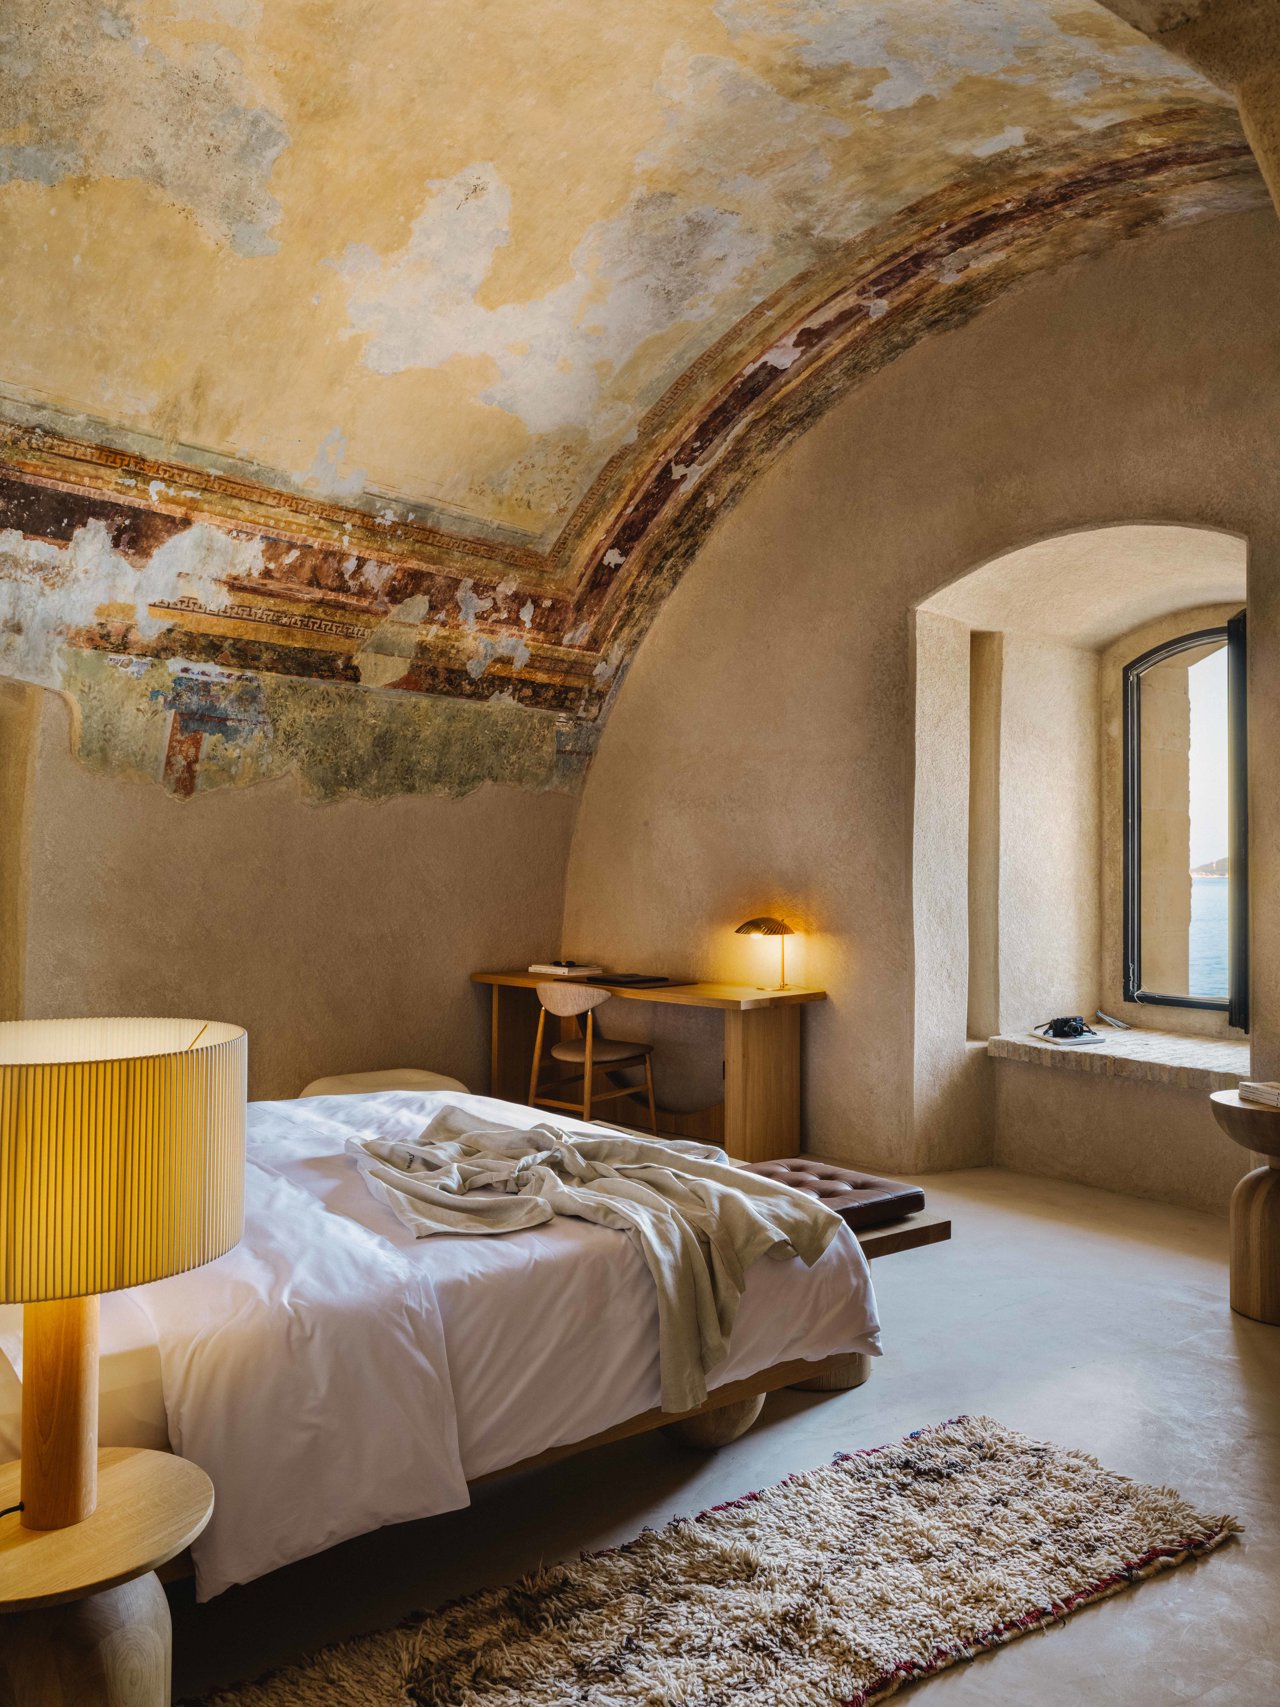 Algunas suites Sky incluso cuentan con frescos originales en los techos.